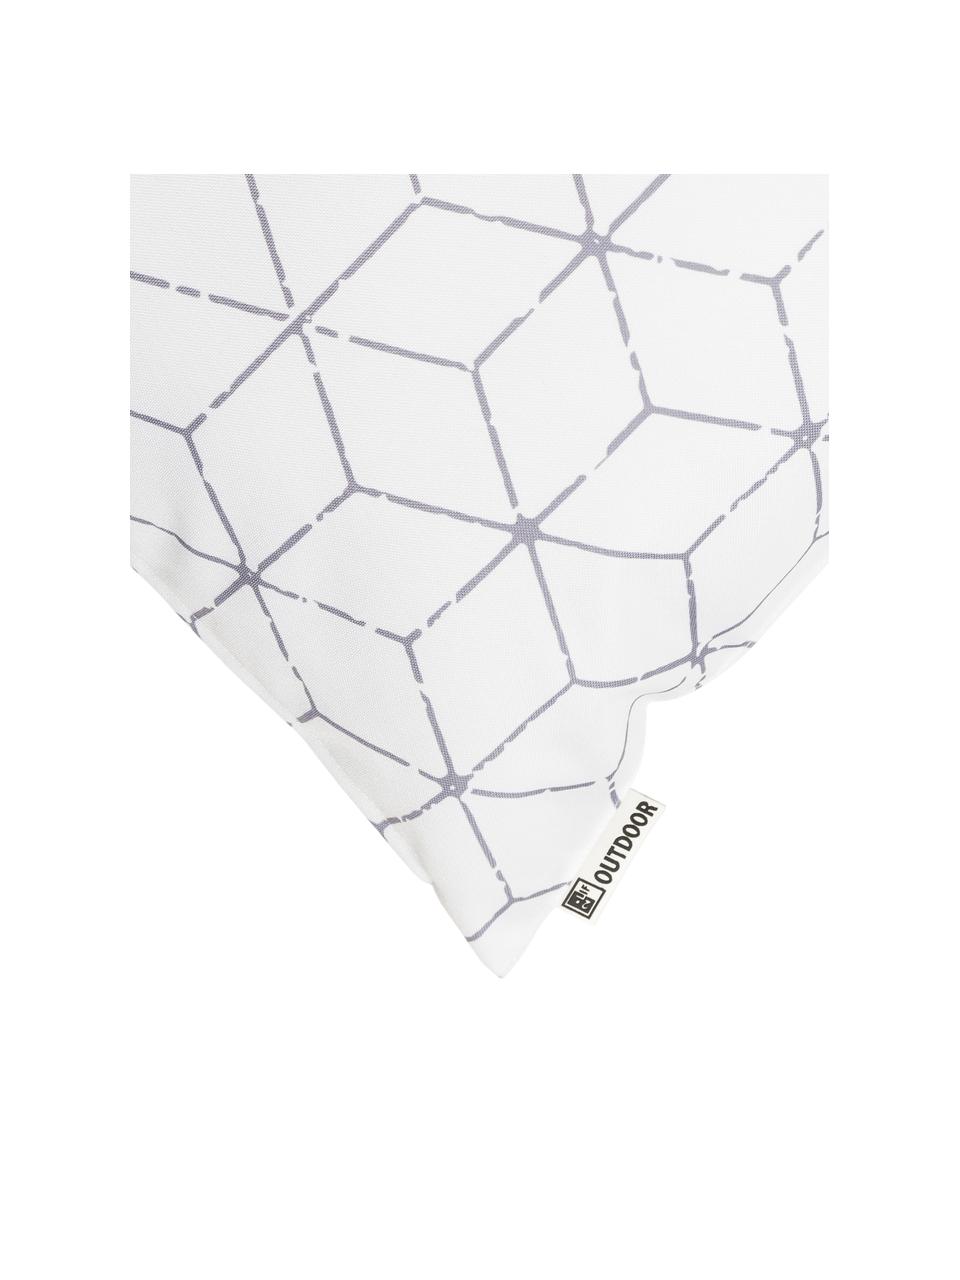 Cuscino da esterno con imbottitura e motivo grafico Cube, 100% poliestere, Bianco, grigio, Larg. 47 x Lung. 47 cm